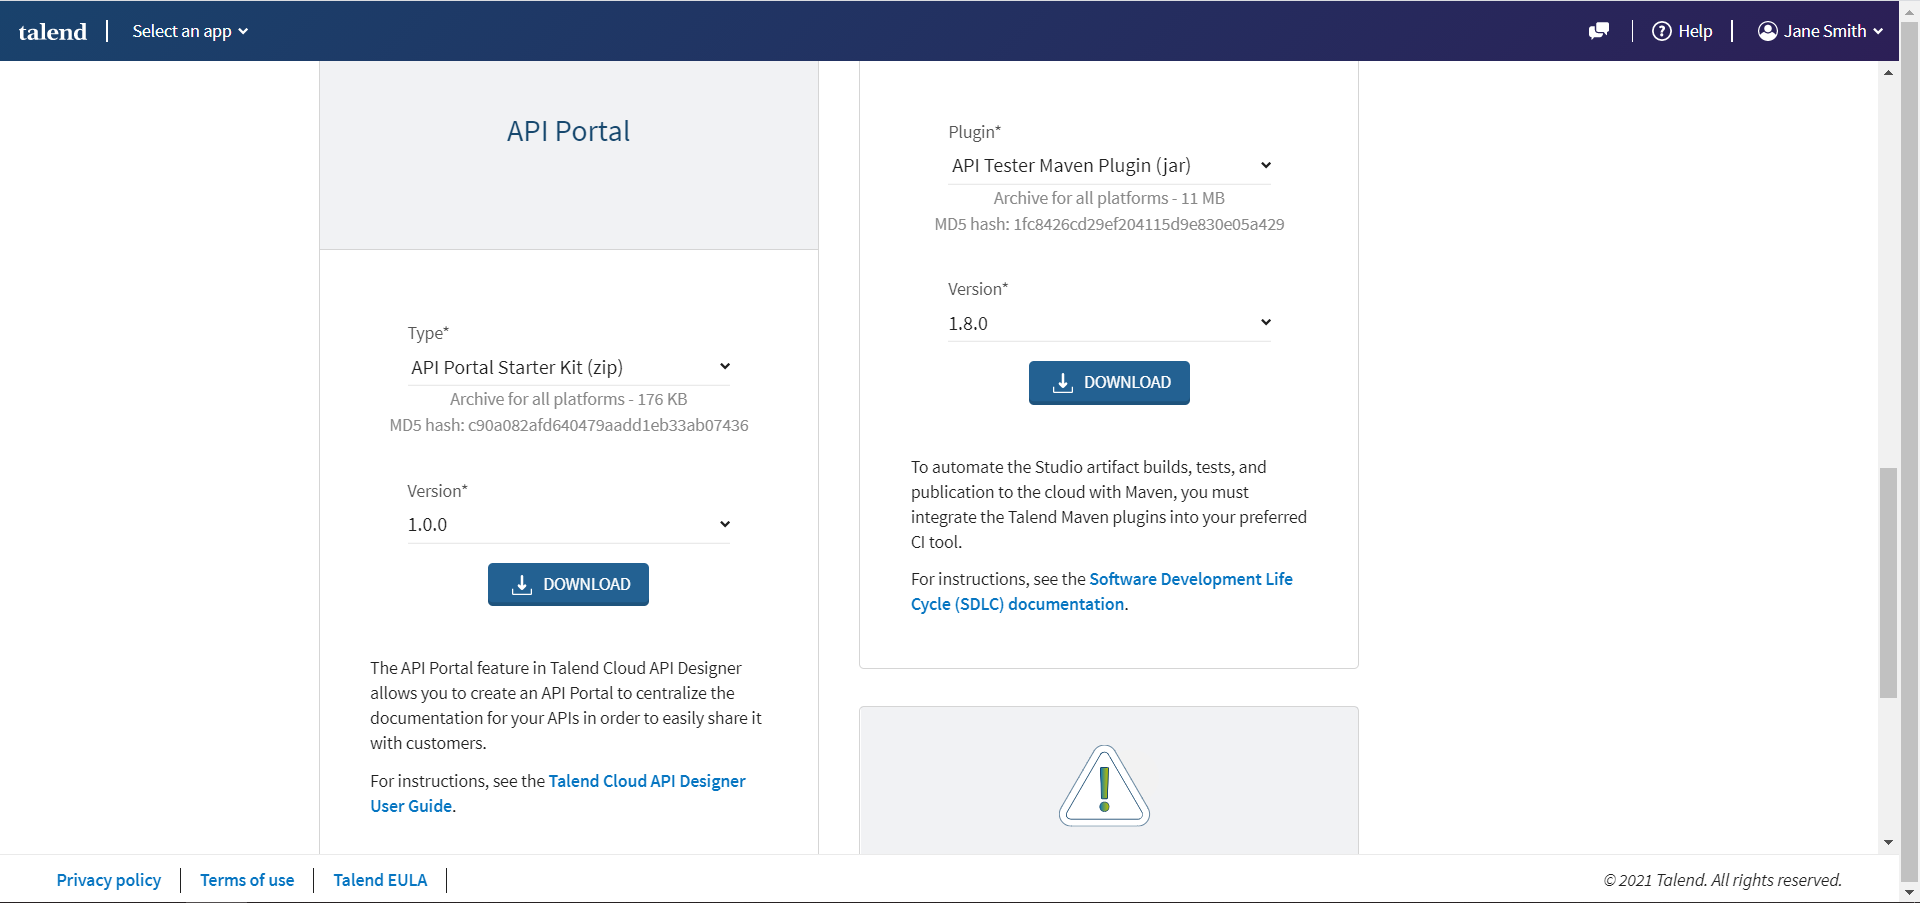 Tuile API Portal de la page Downloads (Téléchargements).